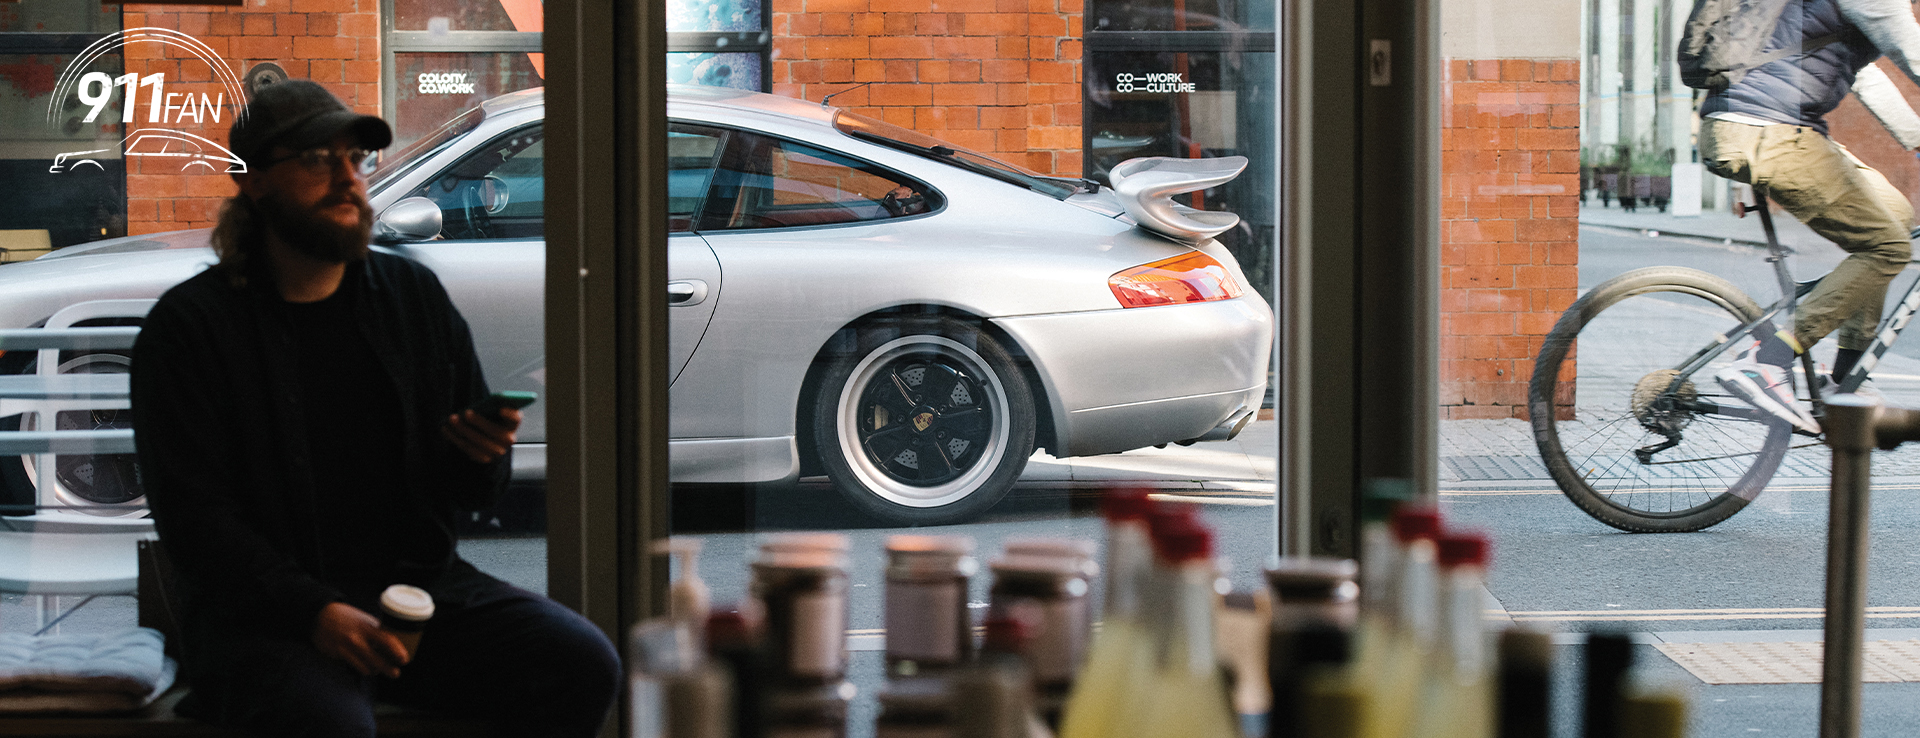 View of Porsche 911 (Type 996) through café window